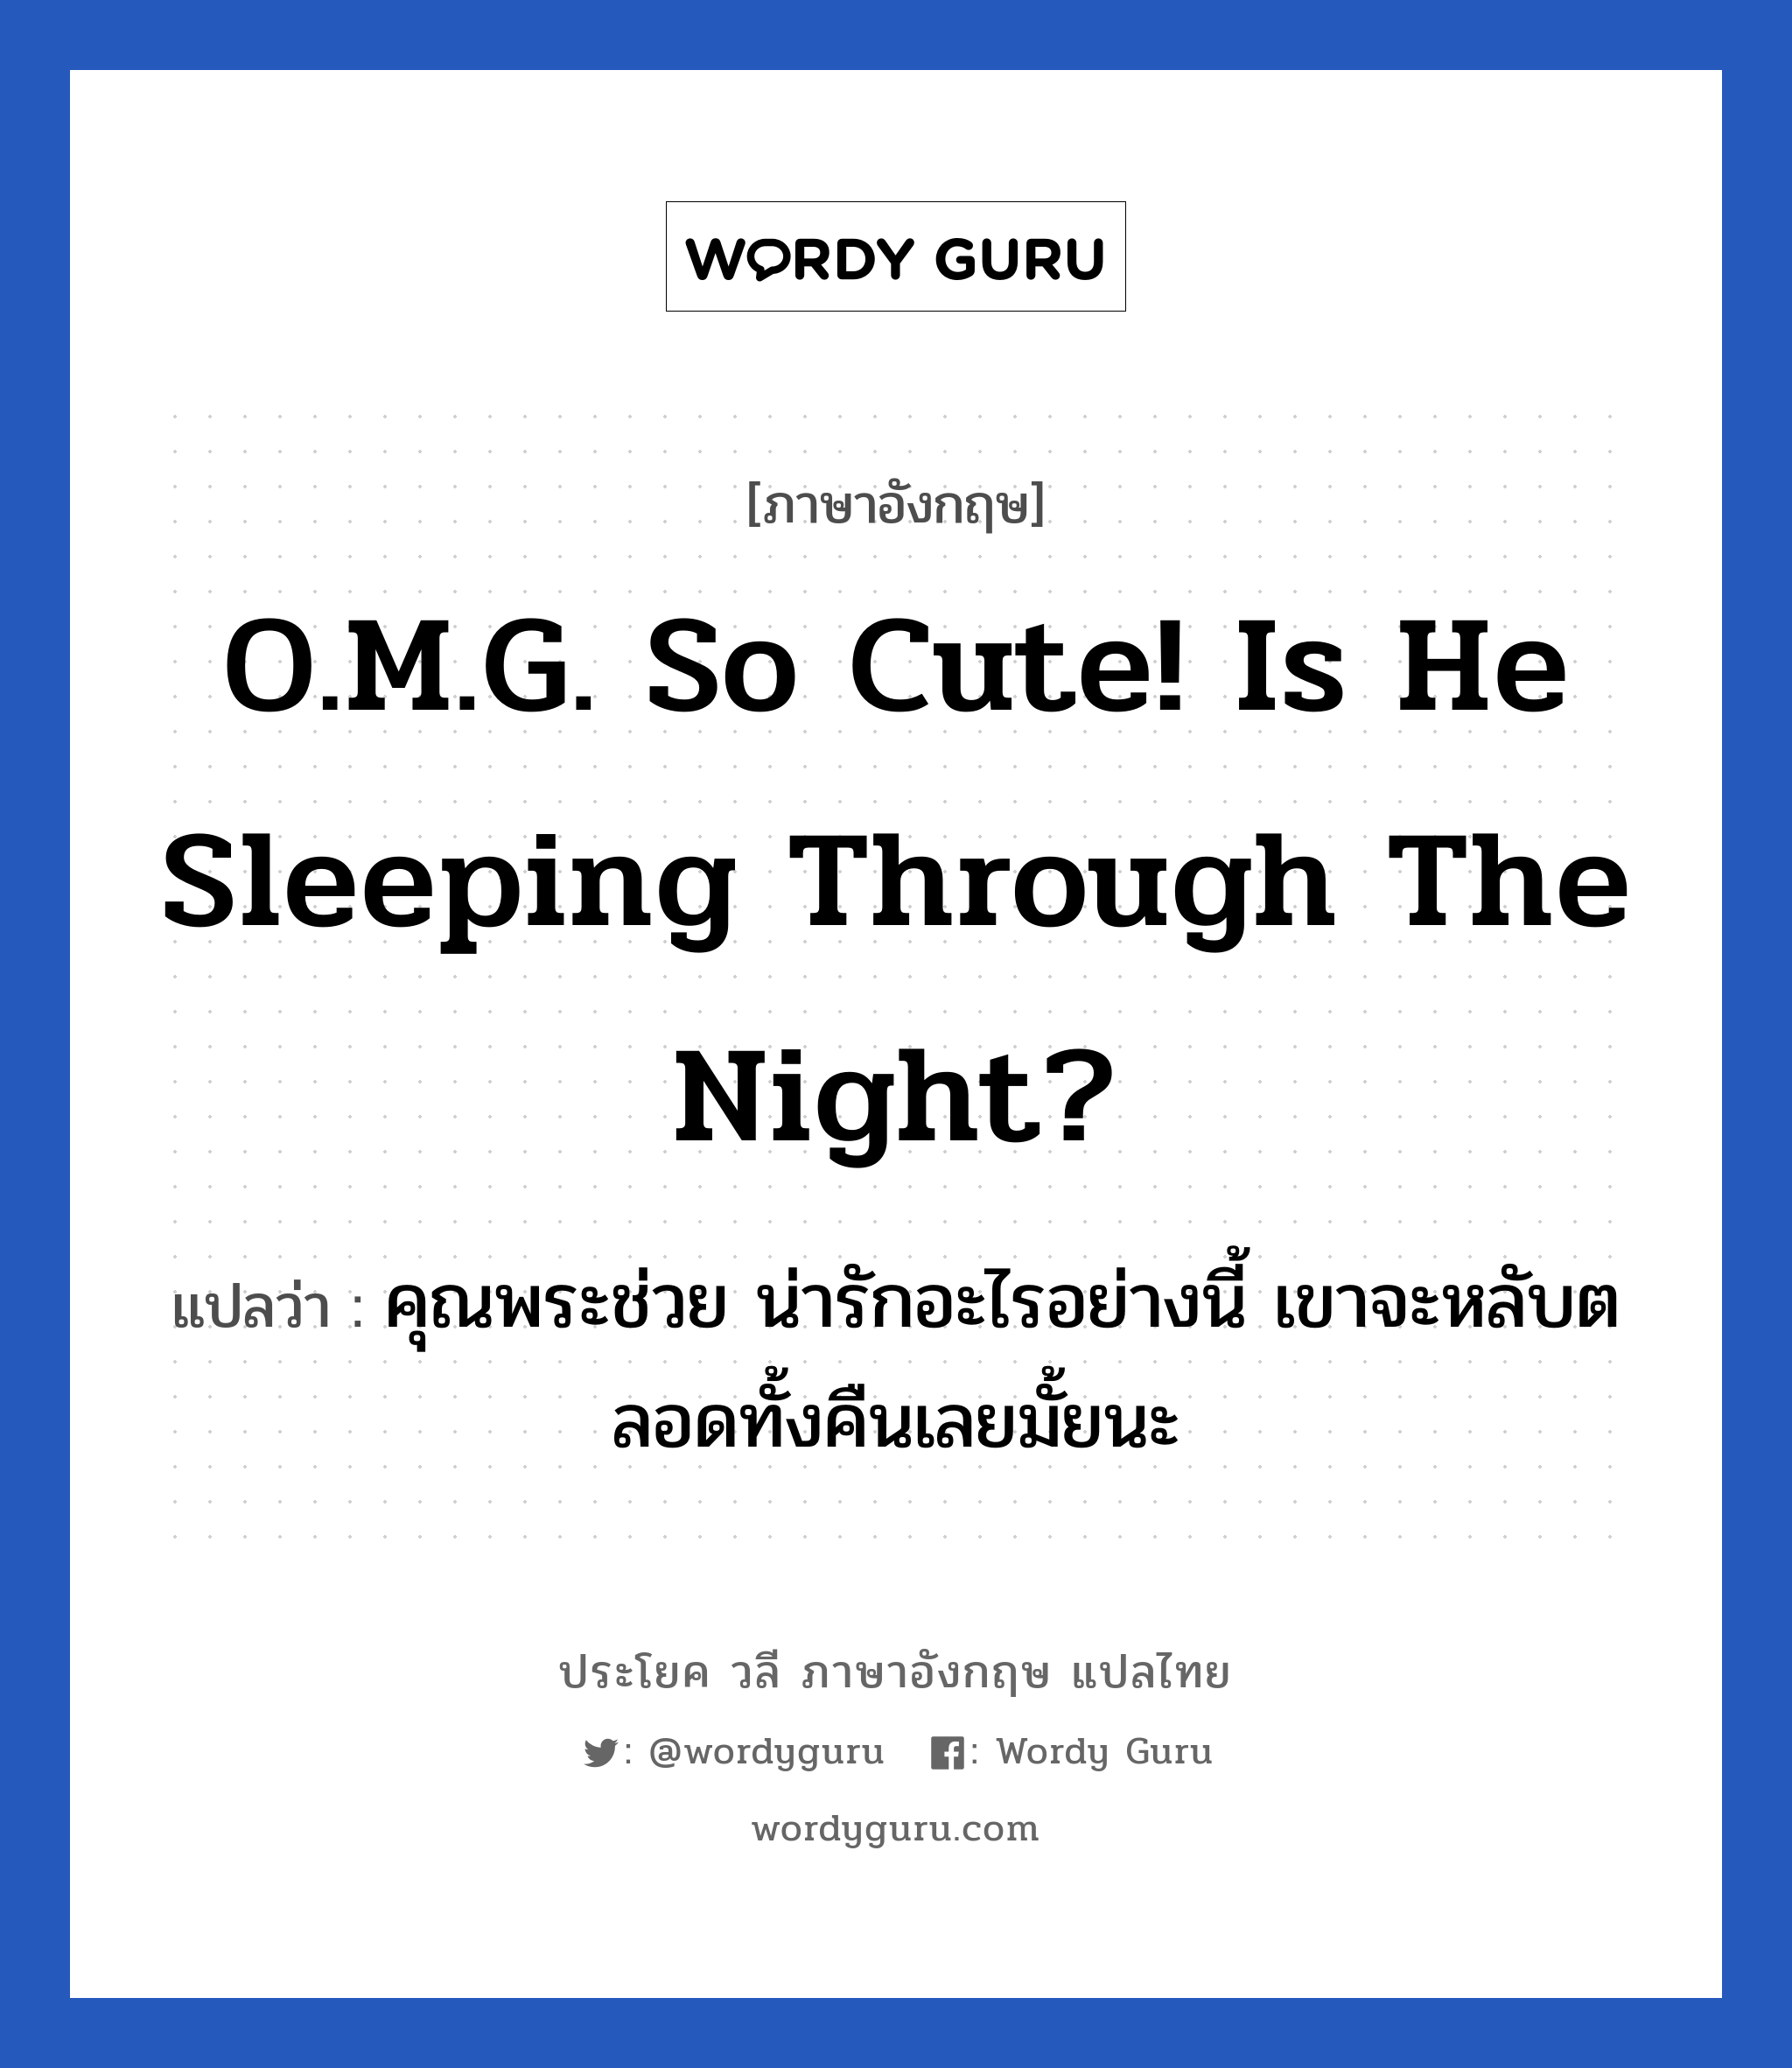 คุณพระช่วย น่ารักอะไรอย่างนี้ เขาจะหลับตลอดทั้งคืนเลยมั้ยนะ ภาษาอังกฤษ?, วลีภาษาอังกฤษ คุณพระช่วย น่ารักอะไรอย่างนี้ เขาจะหลับตลอดทั้งคืนเลยมั้ยนะ แปลว่า O.M.G. So cute! Is he sleeping through the night?